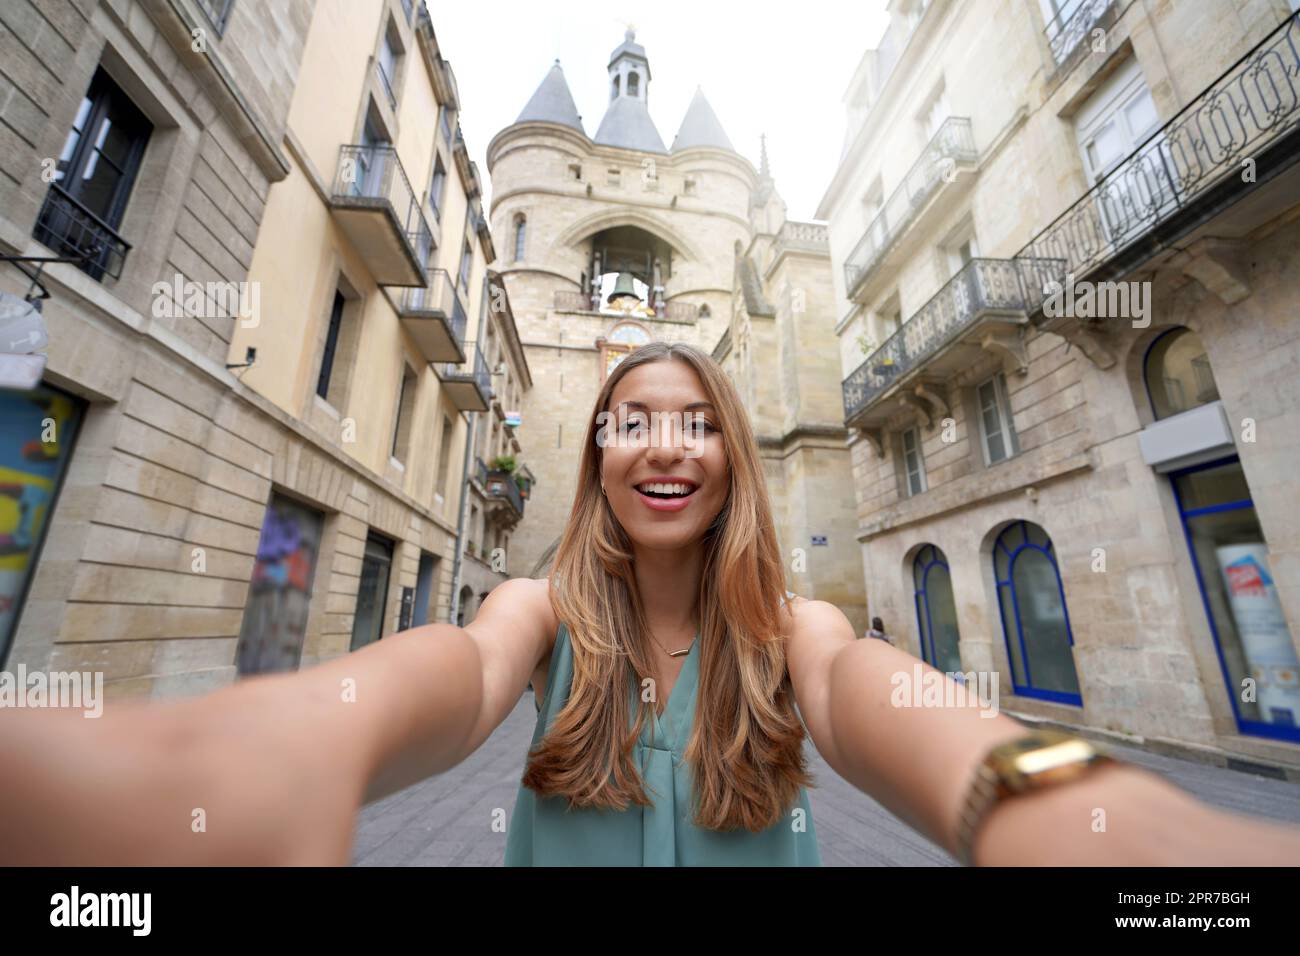 Autorretrato de joven turista sonriendo a la cámara con el histórico campanario de La Grosse cloche en Burdeos, Francia Foto de stock